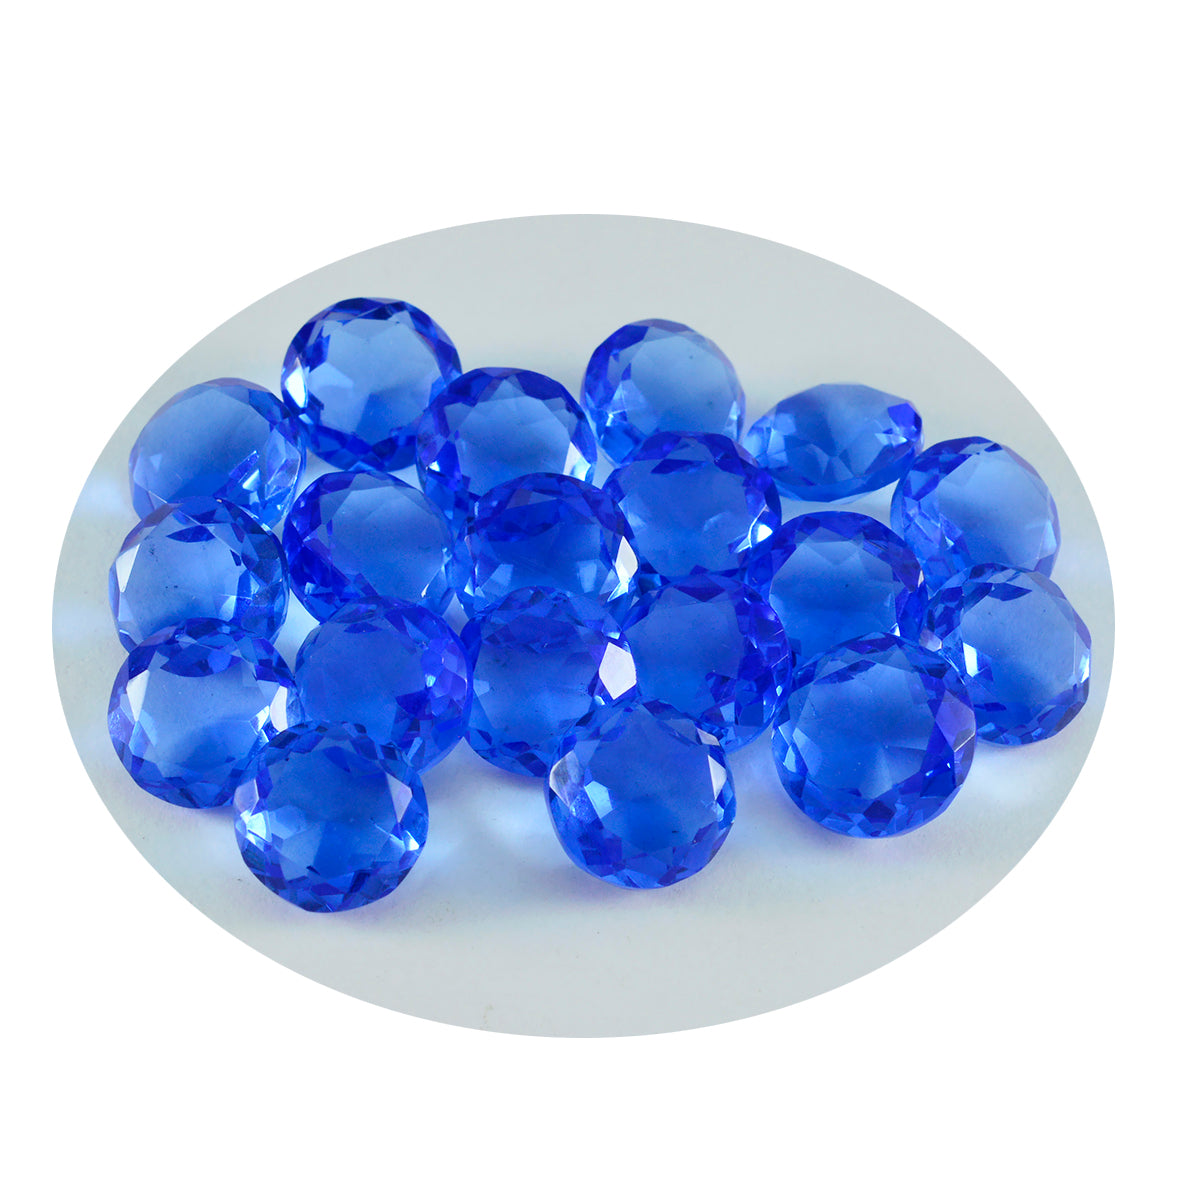 riyogems 1шт синий сапфир cz ограненный 7x7 мм круглая форма превосходное качество свободный драгоценный камень